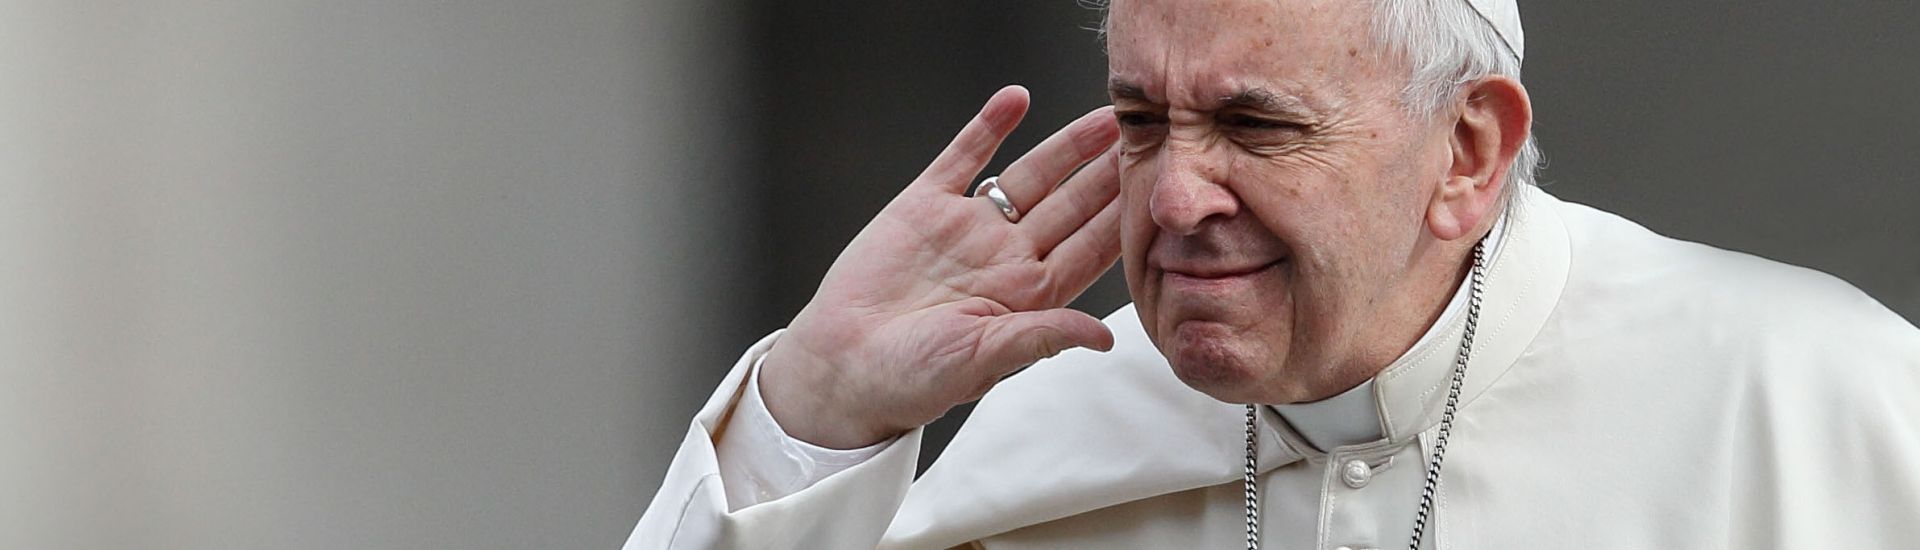 Papst Franziskus hält seine Hand ans Ohr, um zu hören.